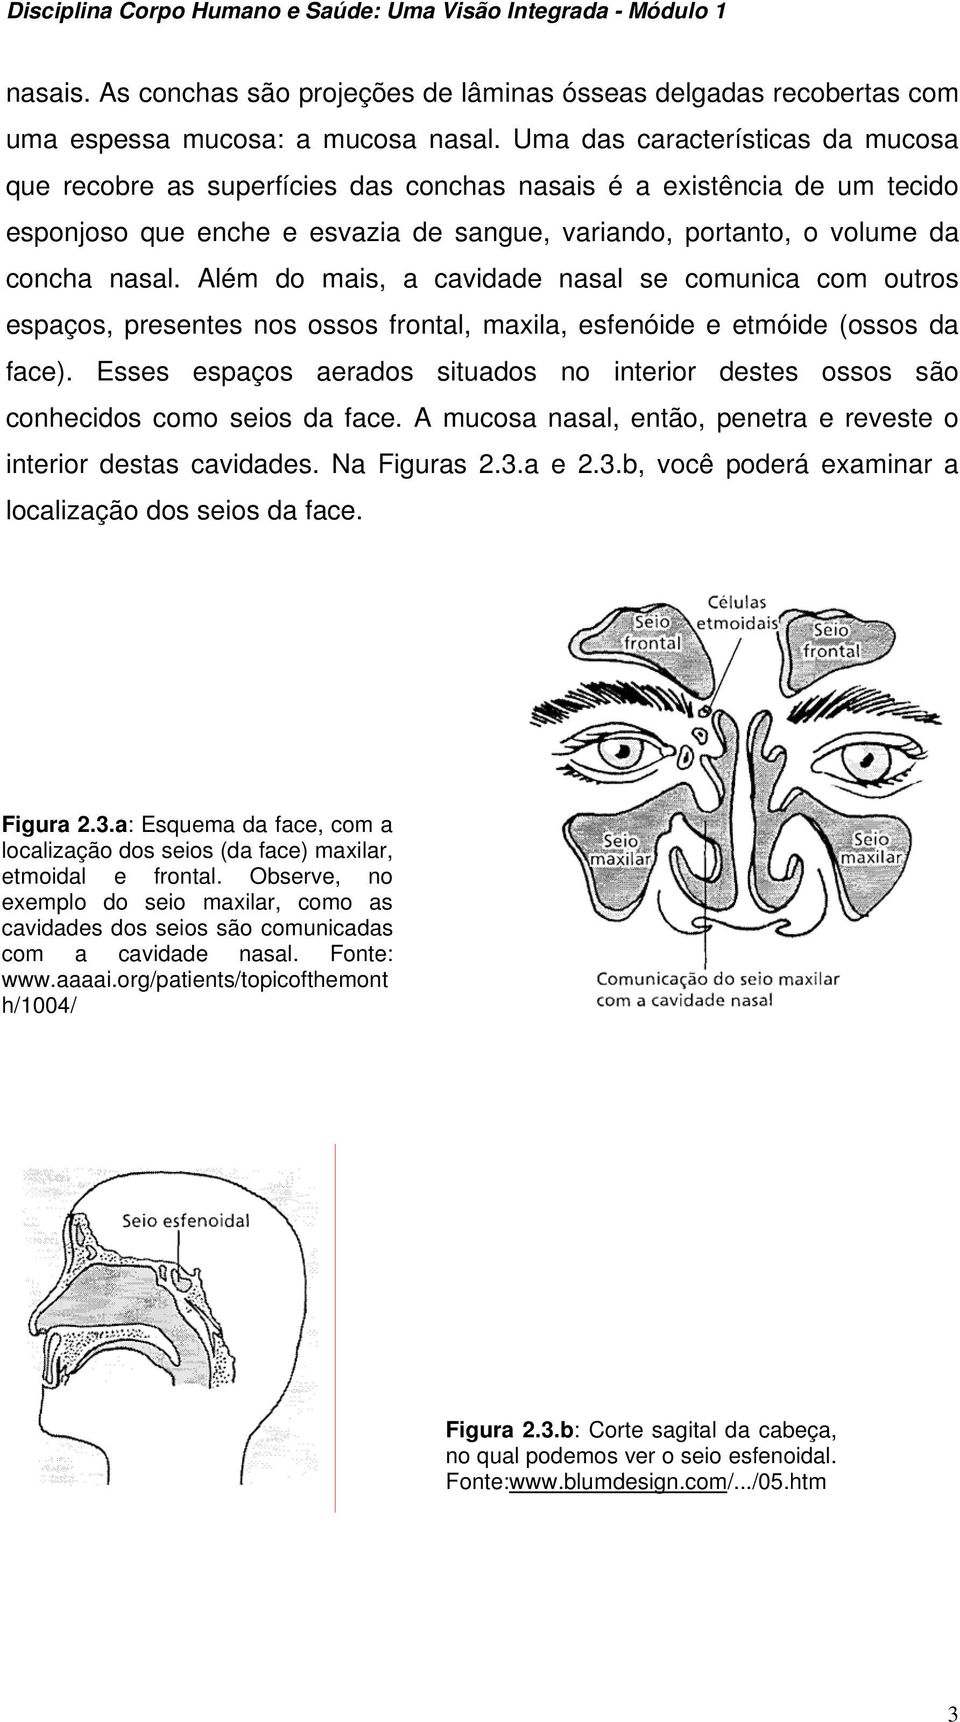 Além do mais, a cavidade nasal se comunica com outros espaços, presentes nos ossos frontal, maxila, esfenóide e etmóide (ossos da face).